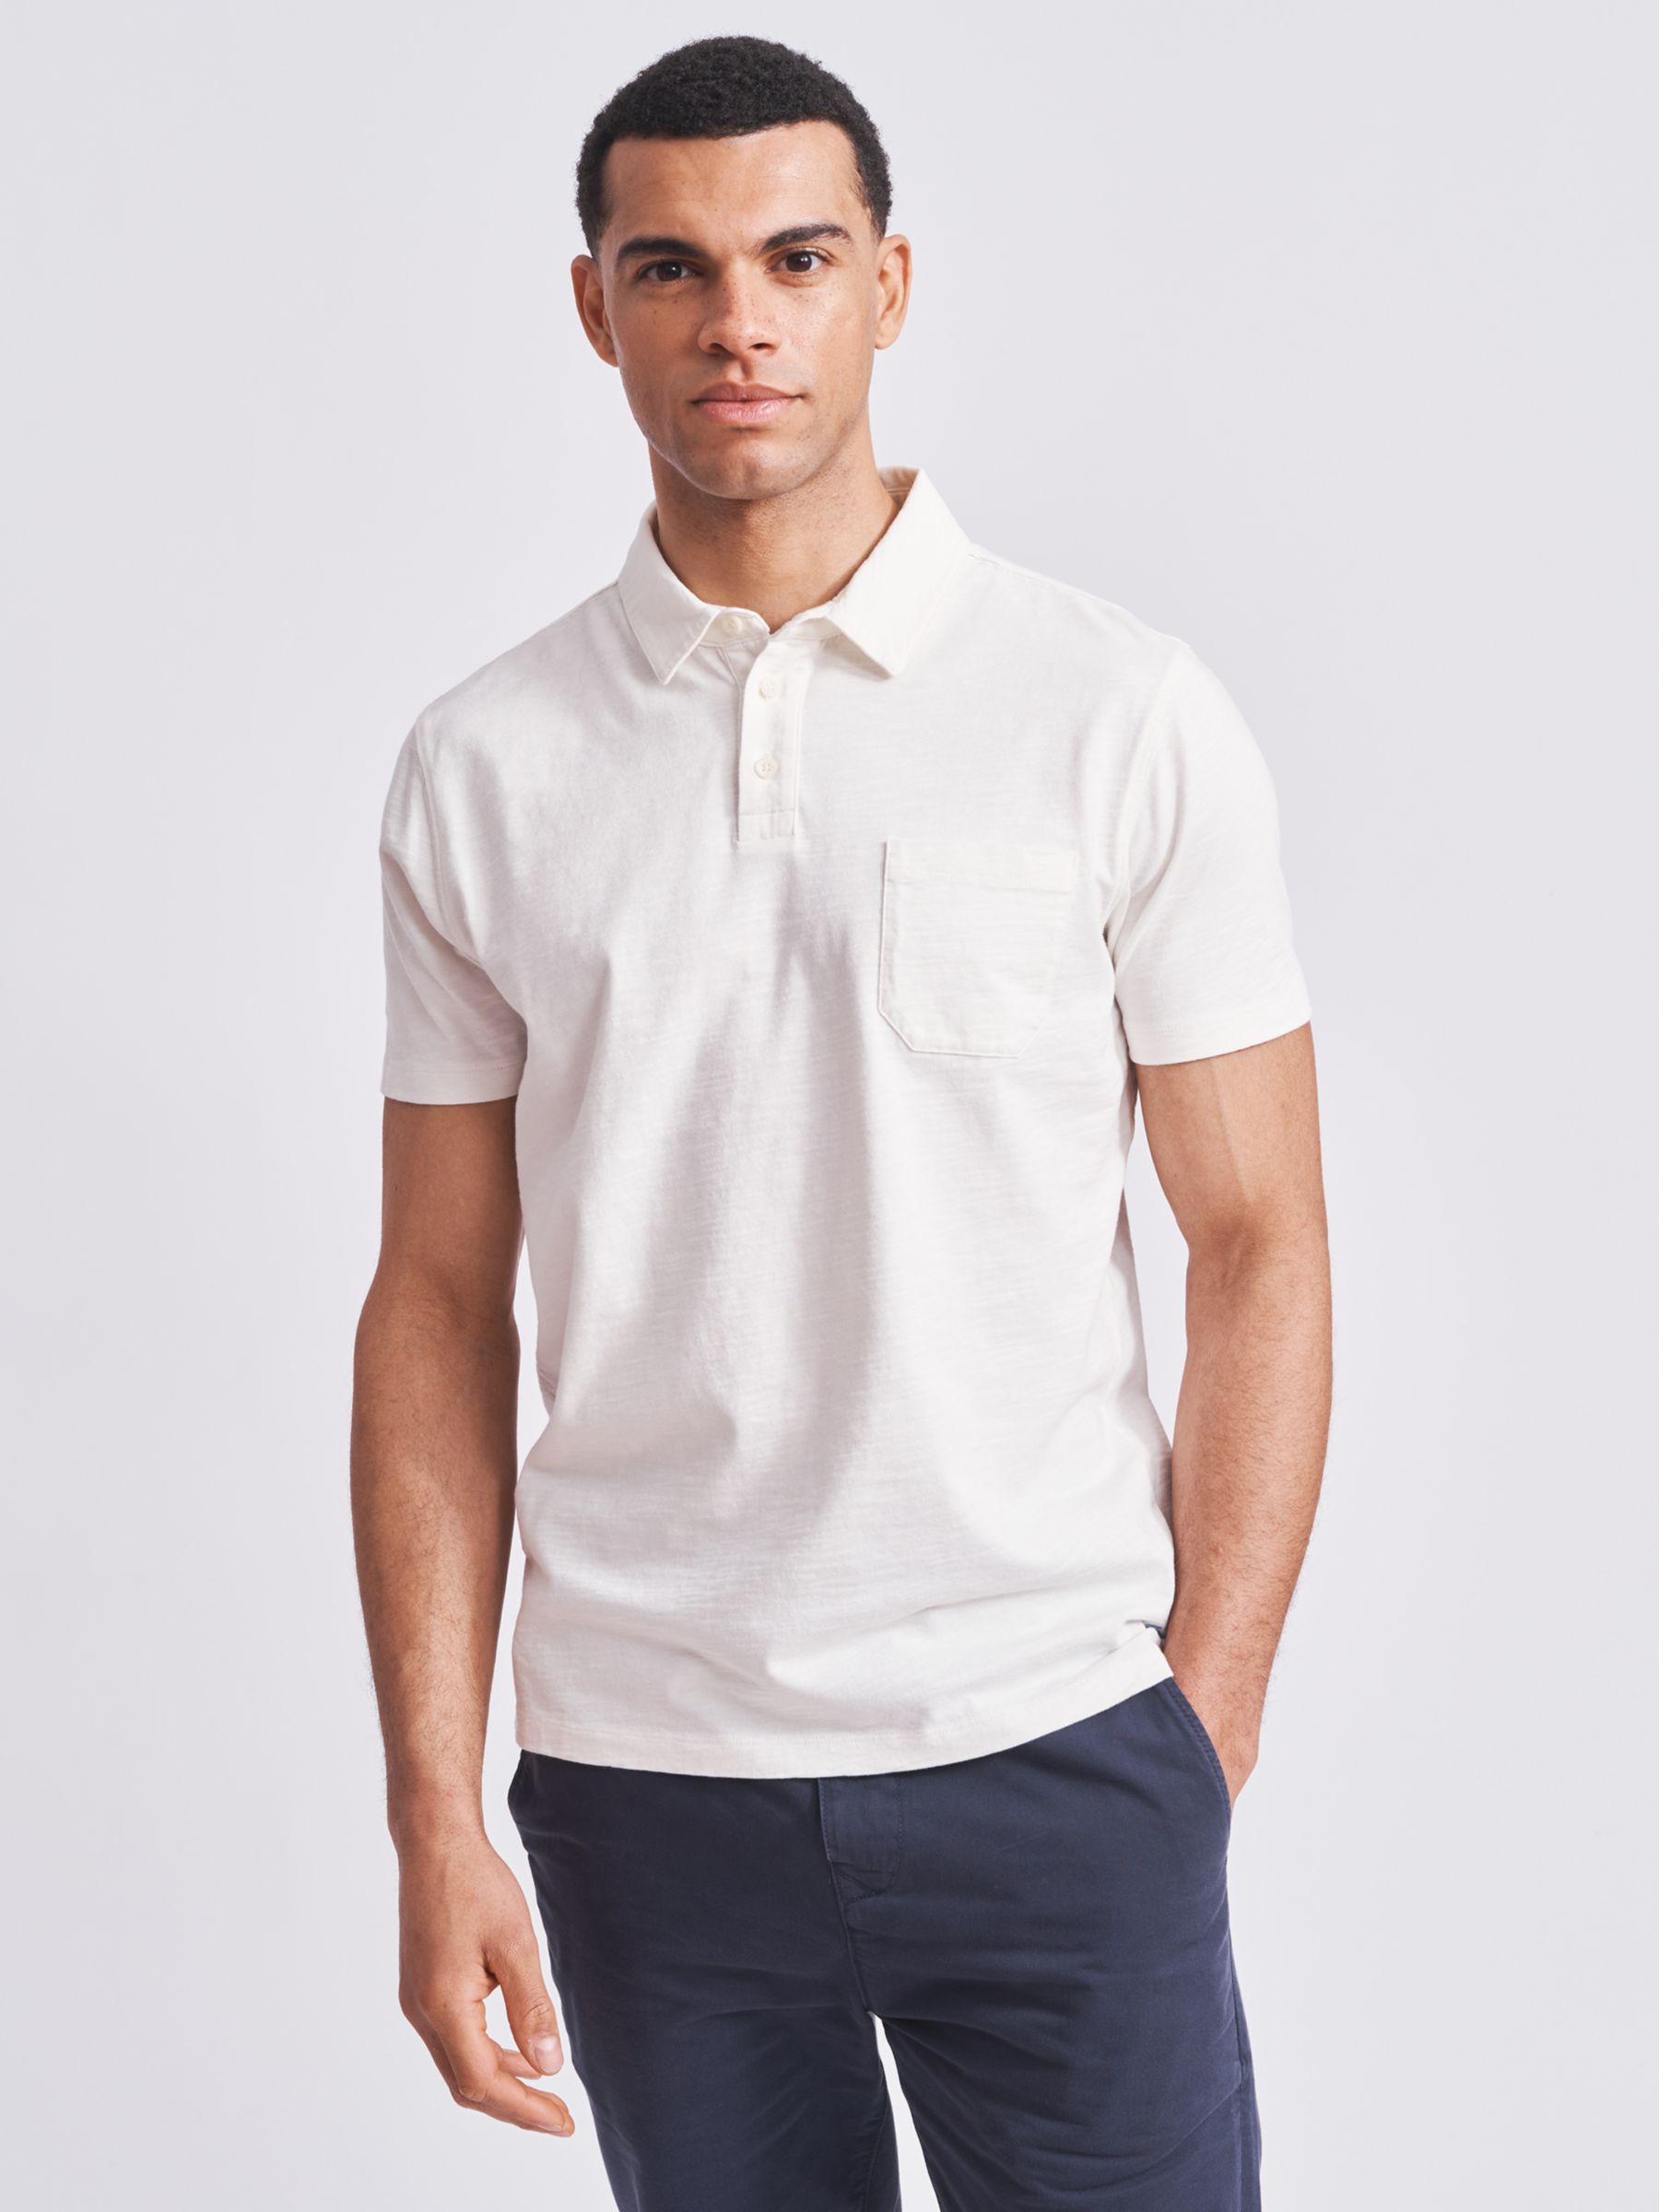 Aubin Claxby Slub Cotton Polo Shirt, White, S